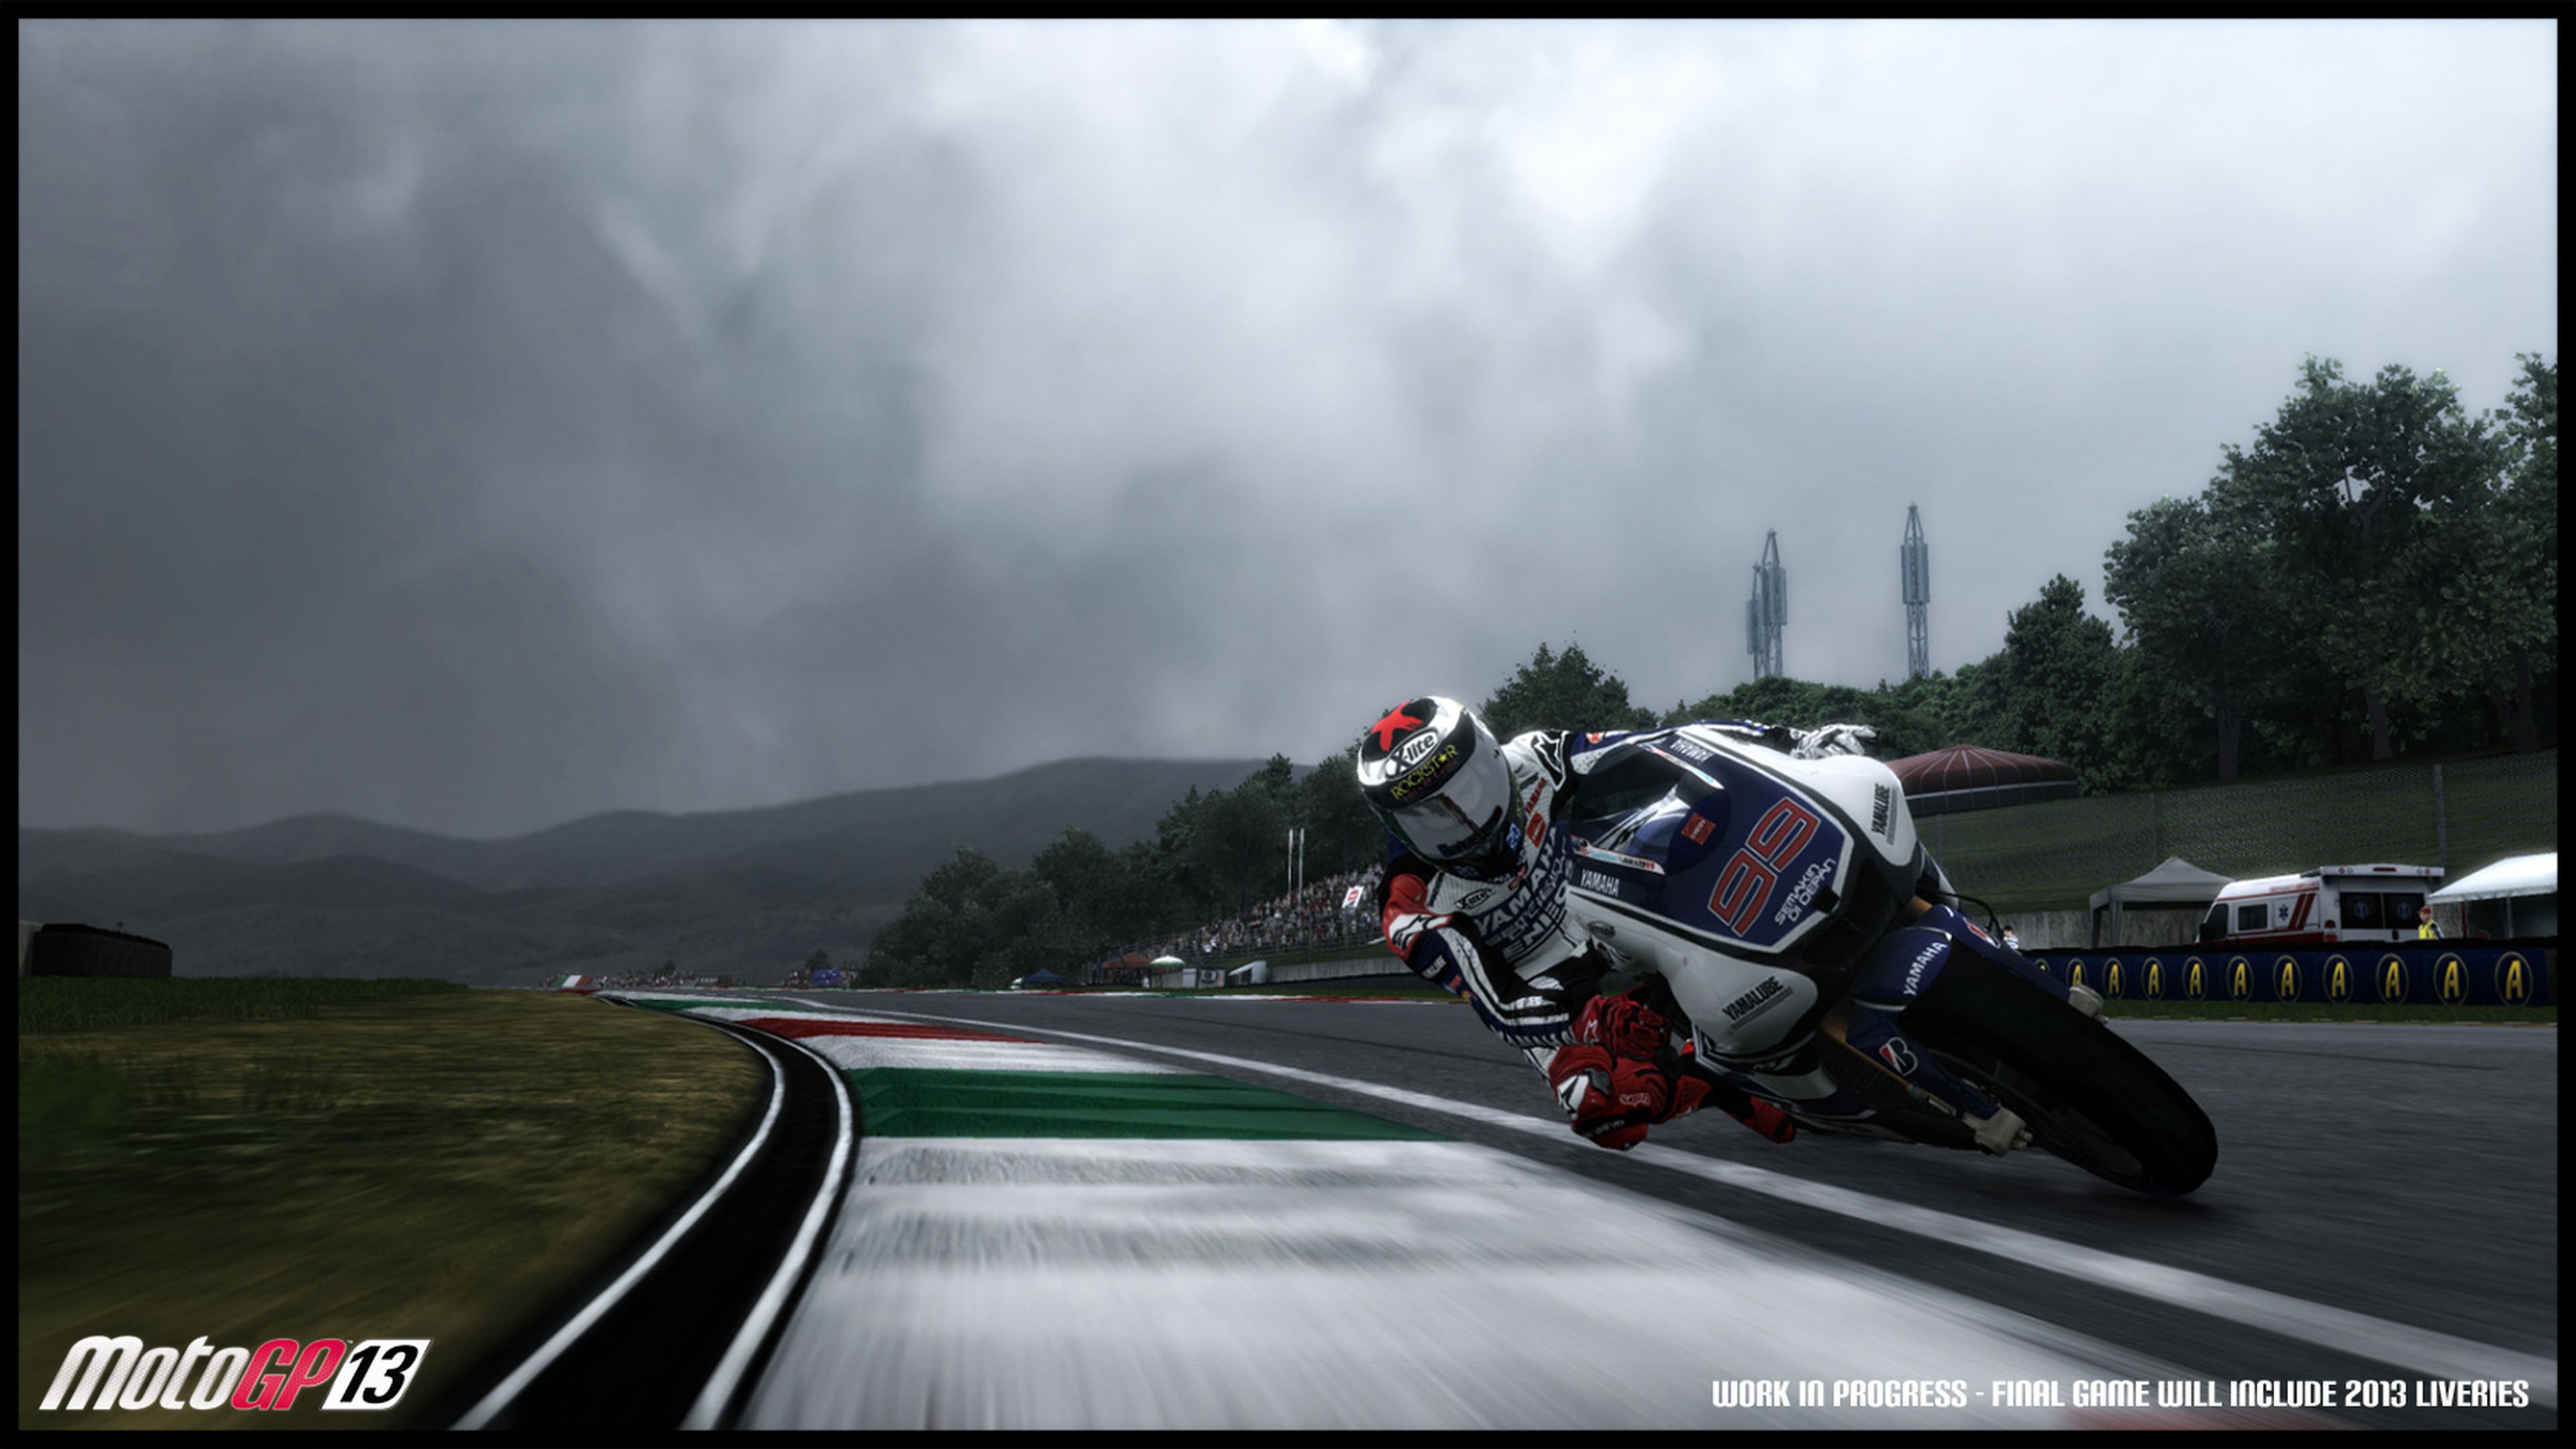 Análisis de MotoGP 13 para PS3, 360 y PC